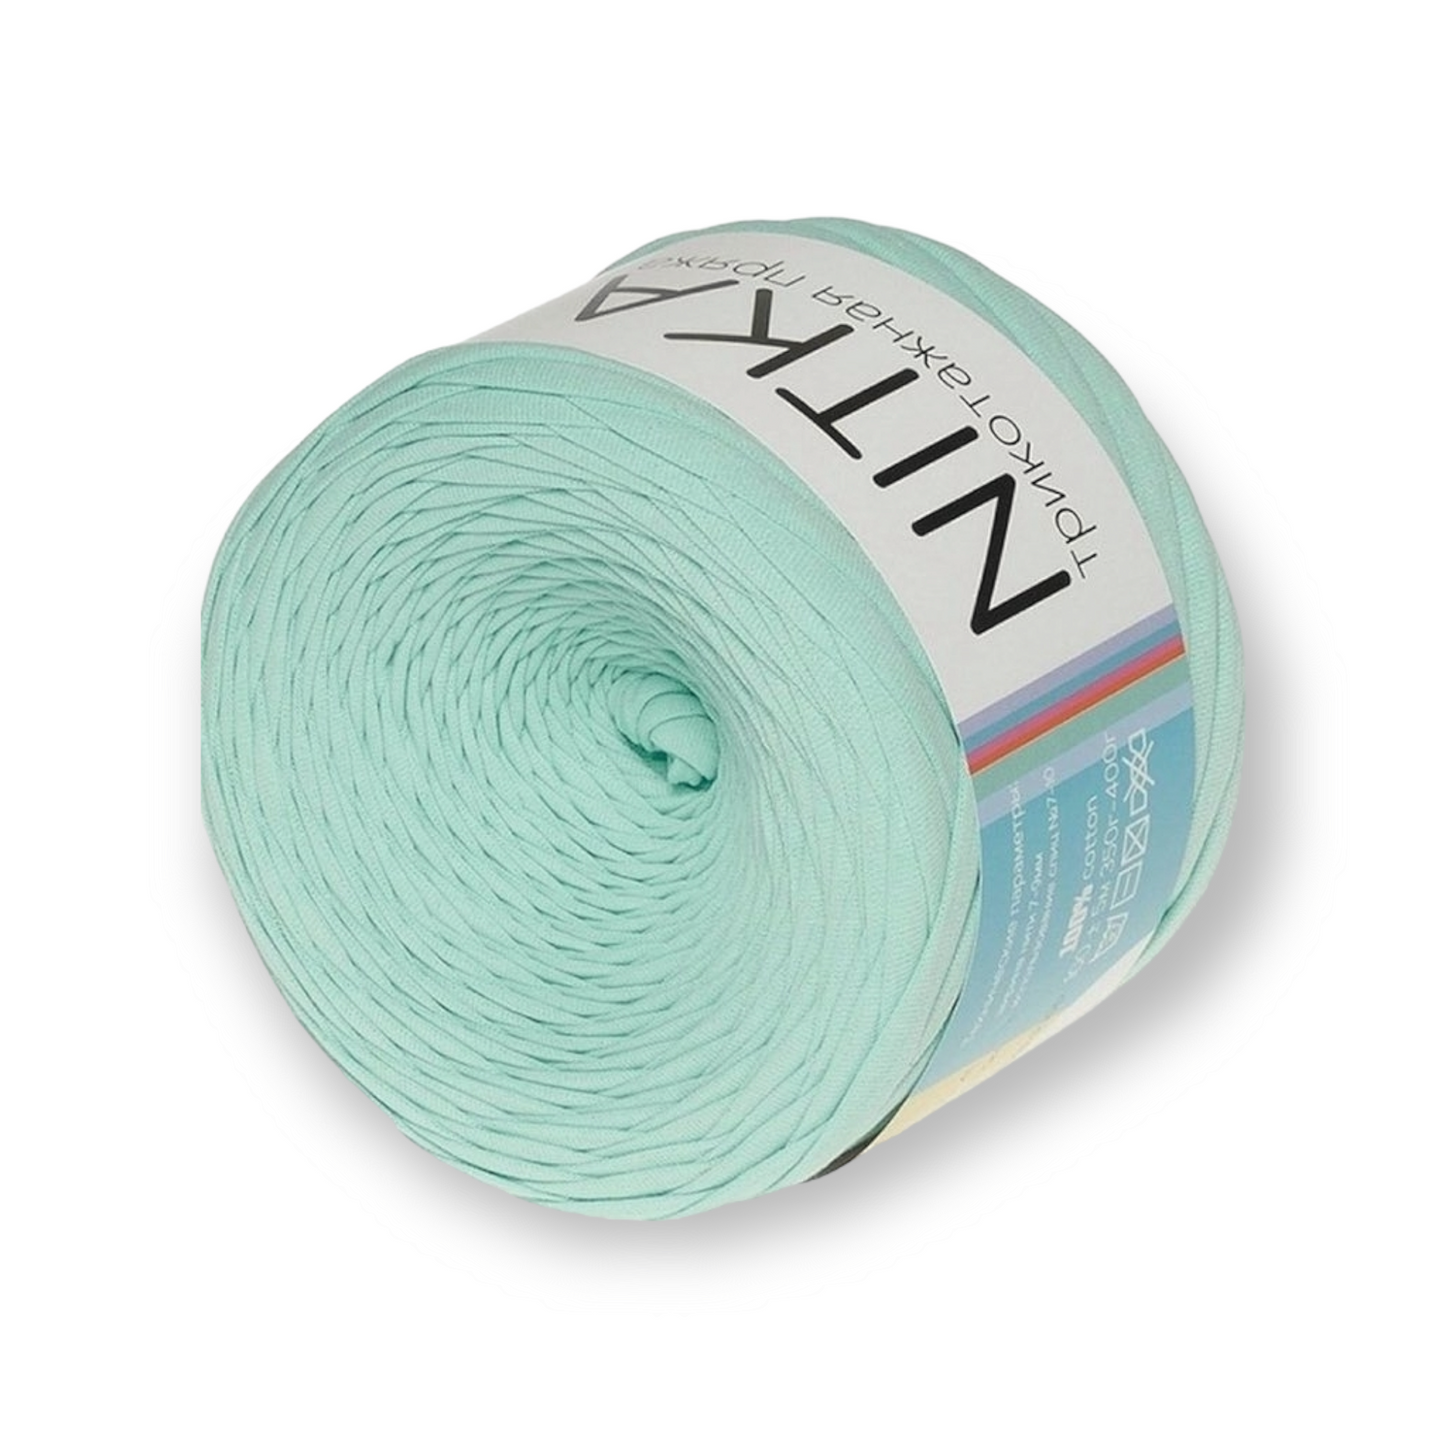 Hilo textil NITKA de Rusia 100% algodón 1A calidad 100 metros rollo siempre ancho constante Jersey cinta Jersey hilo